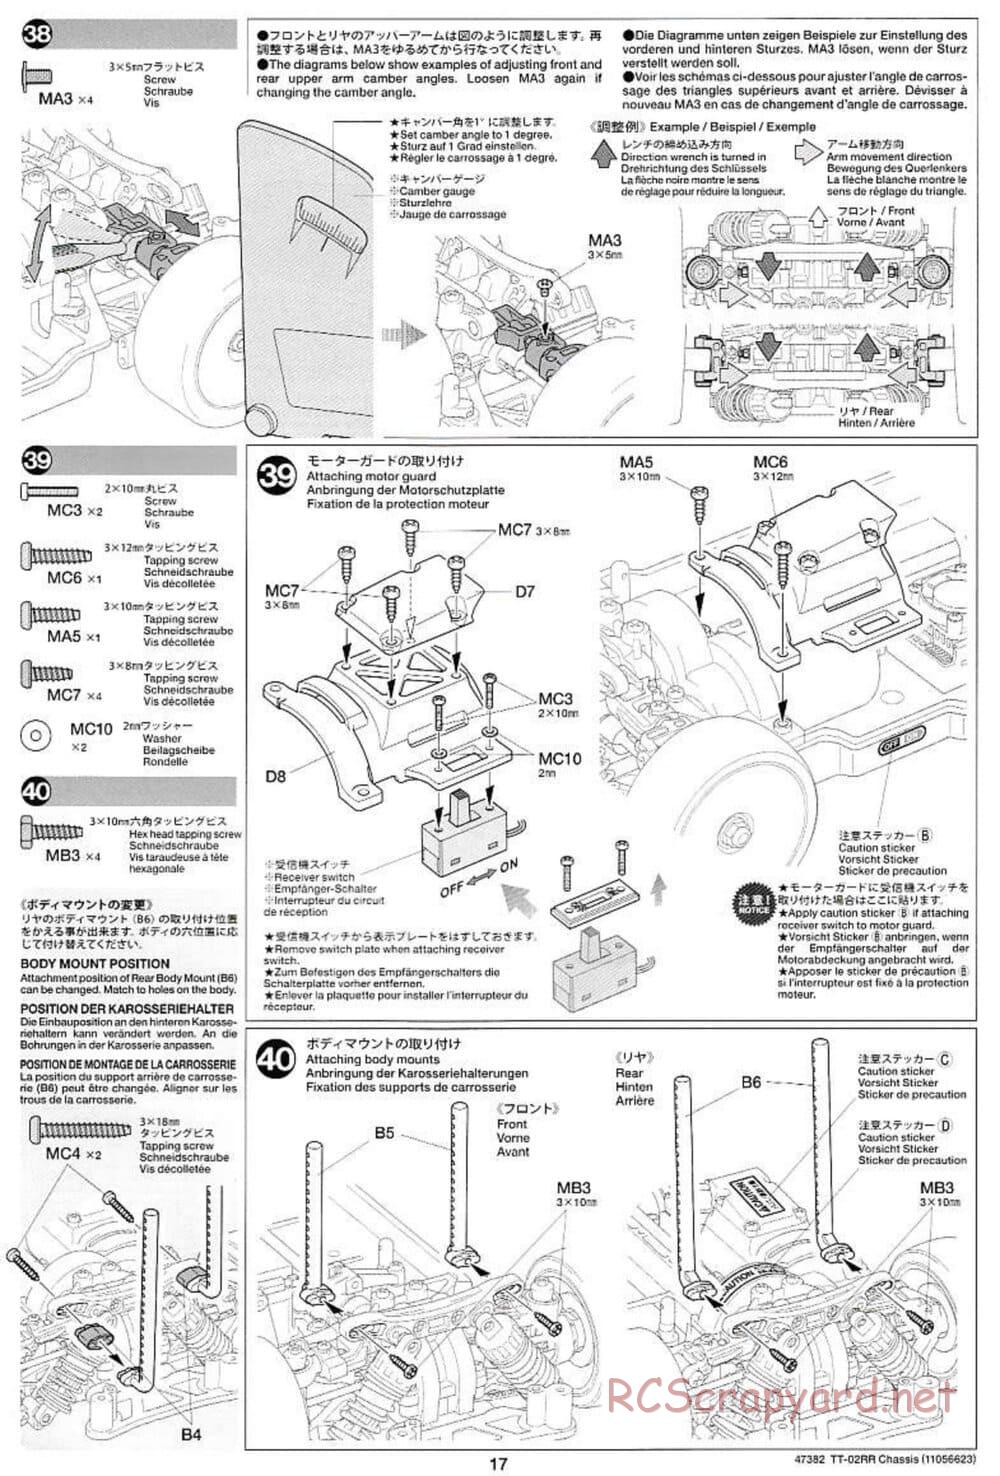 Tamiya - TT-02RR Chassis - Manual - Page 17